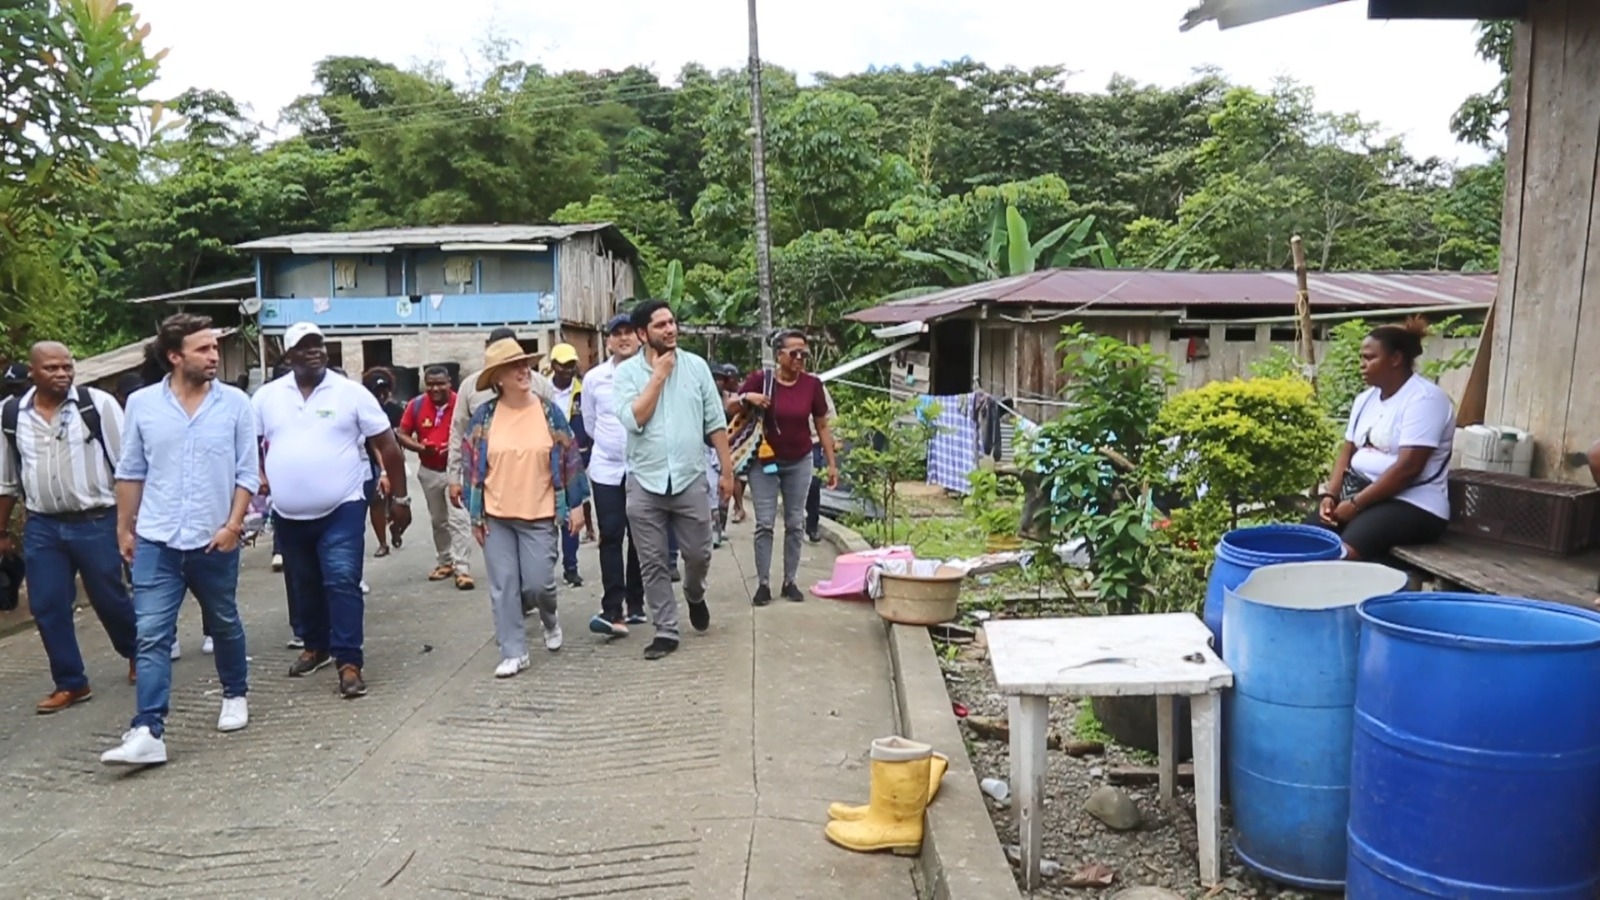 La Ministra de Vivienda visitó la comunidad de San Isidro, en el río Calima, revisando el problema habitacional de personas desplazadas del territorio 